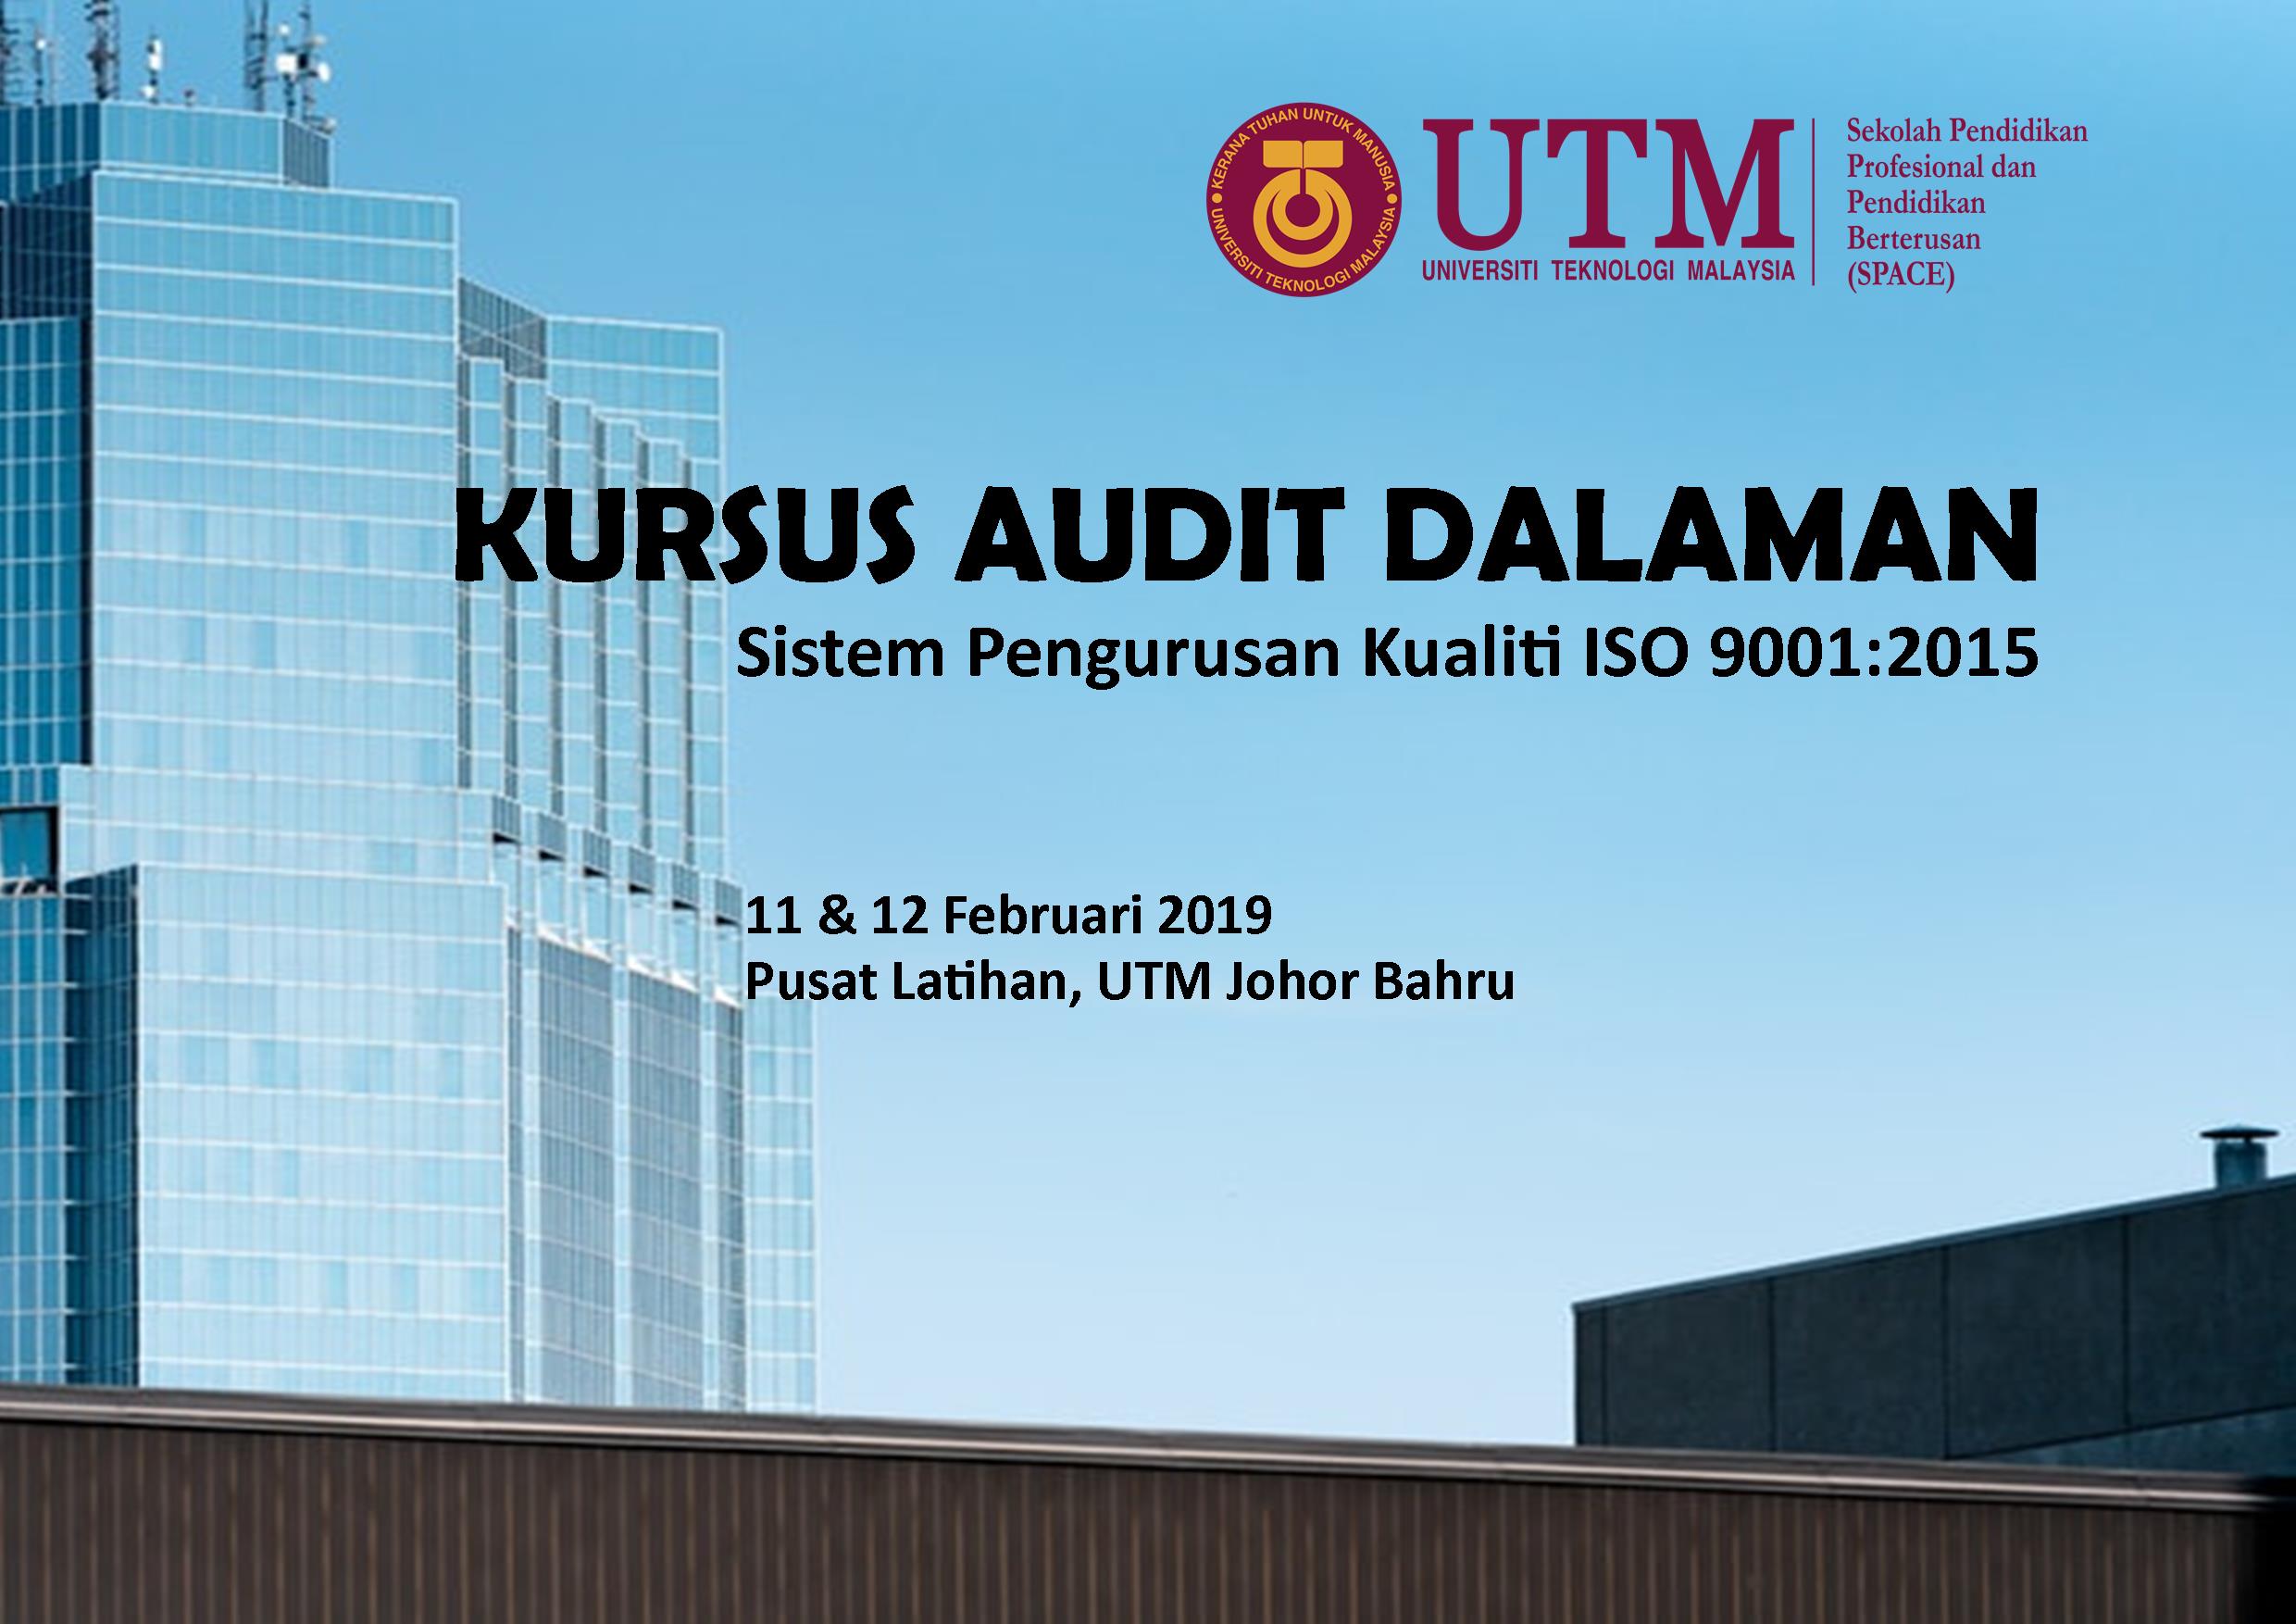 Kursus Audit Dalaman bagi Sistem Pengurusan Kualiti ISO 9001:2015 @ Pusat Latihan, UTM Johor Bahru